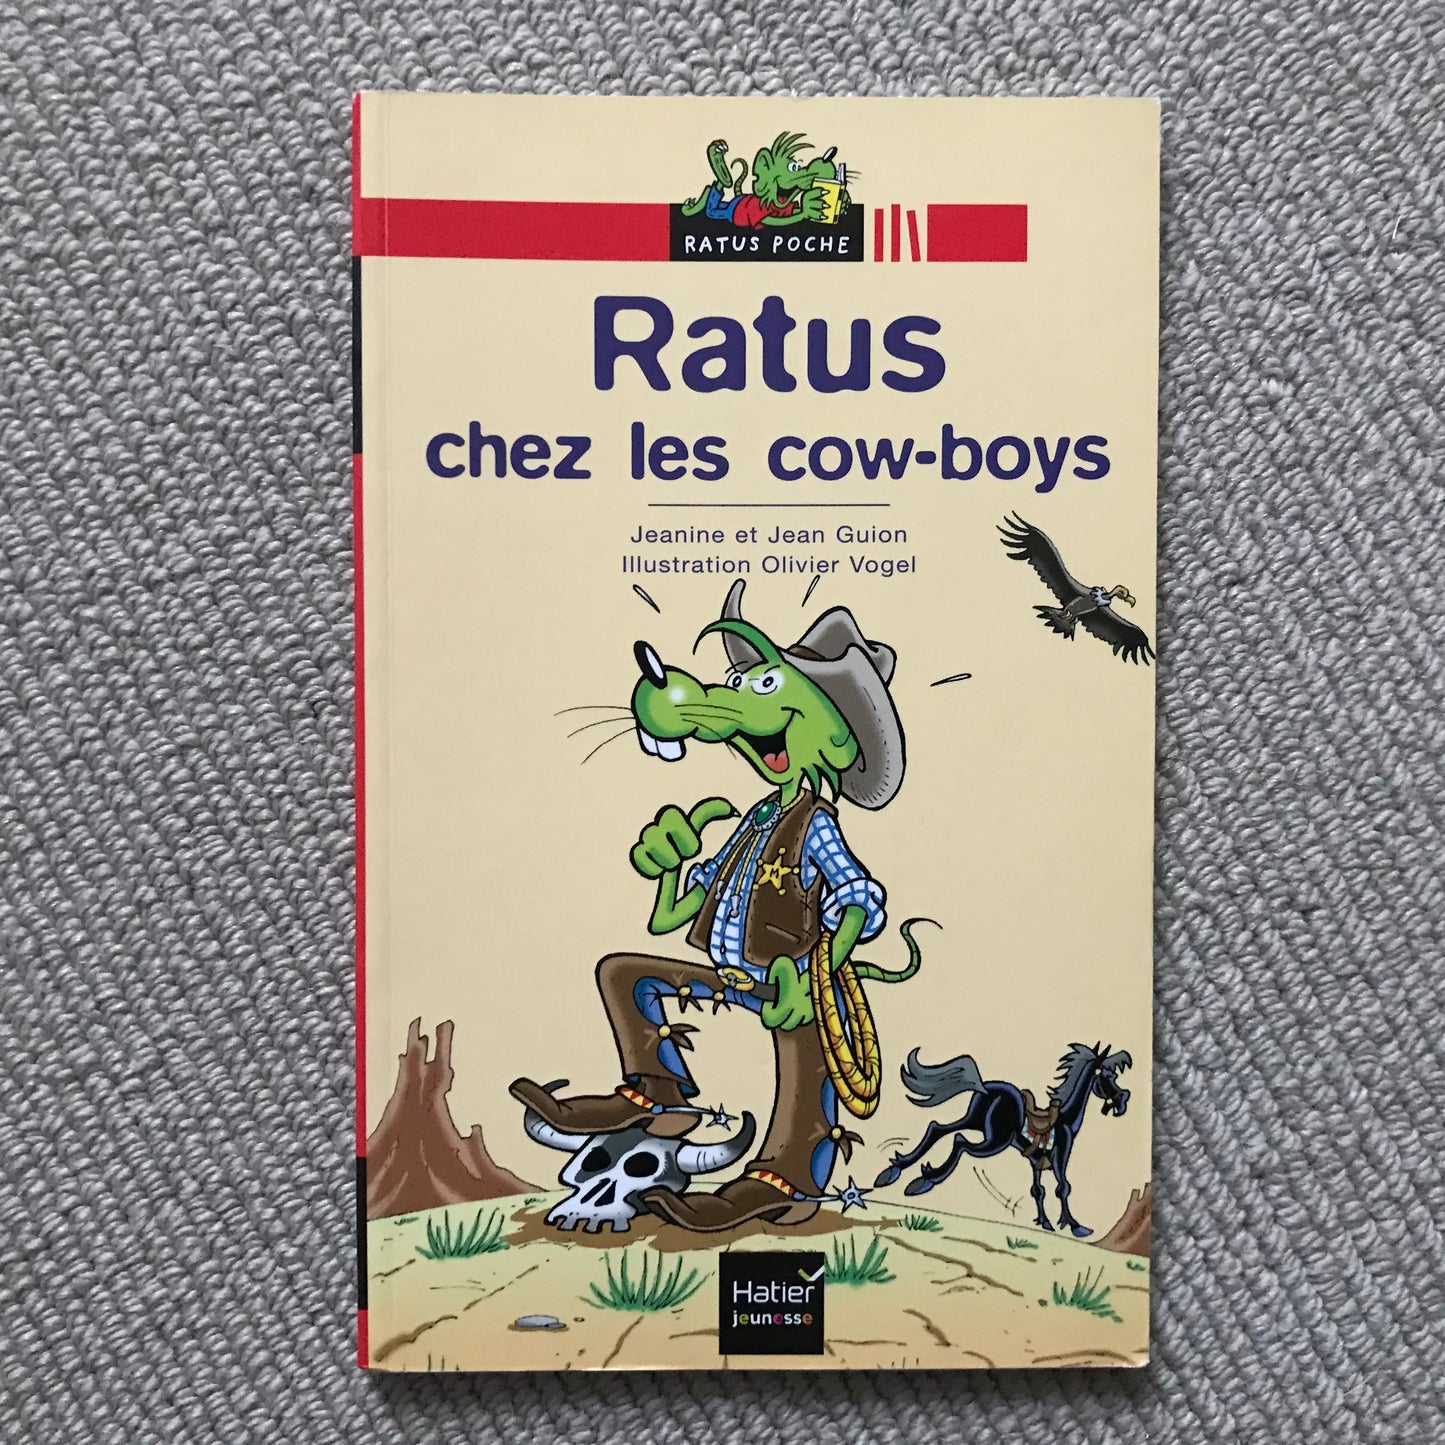 Ratus Poche: Ratus chez les cow-boys - J. & J. Guion